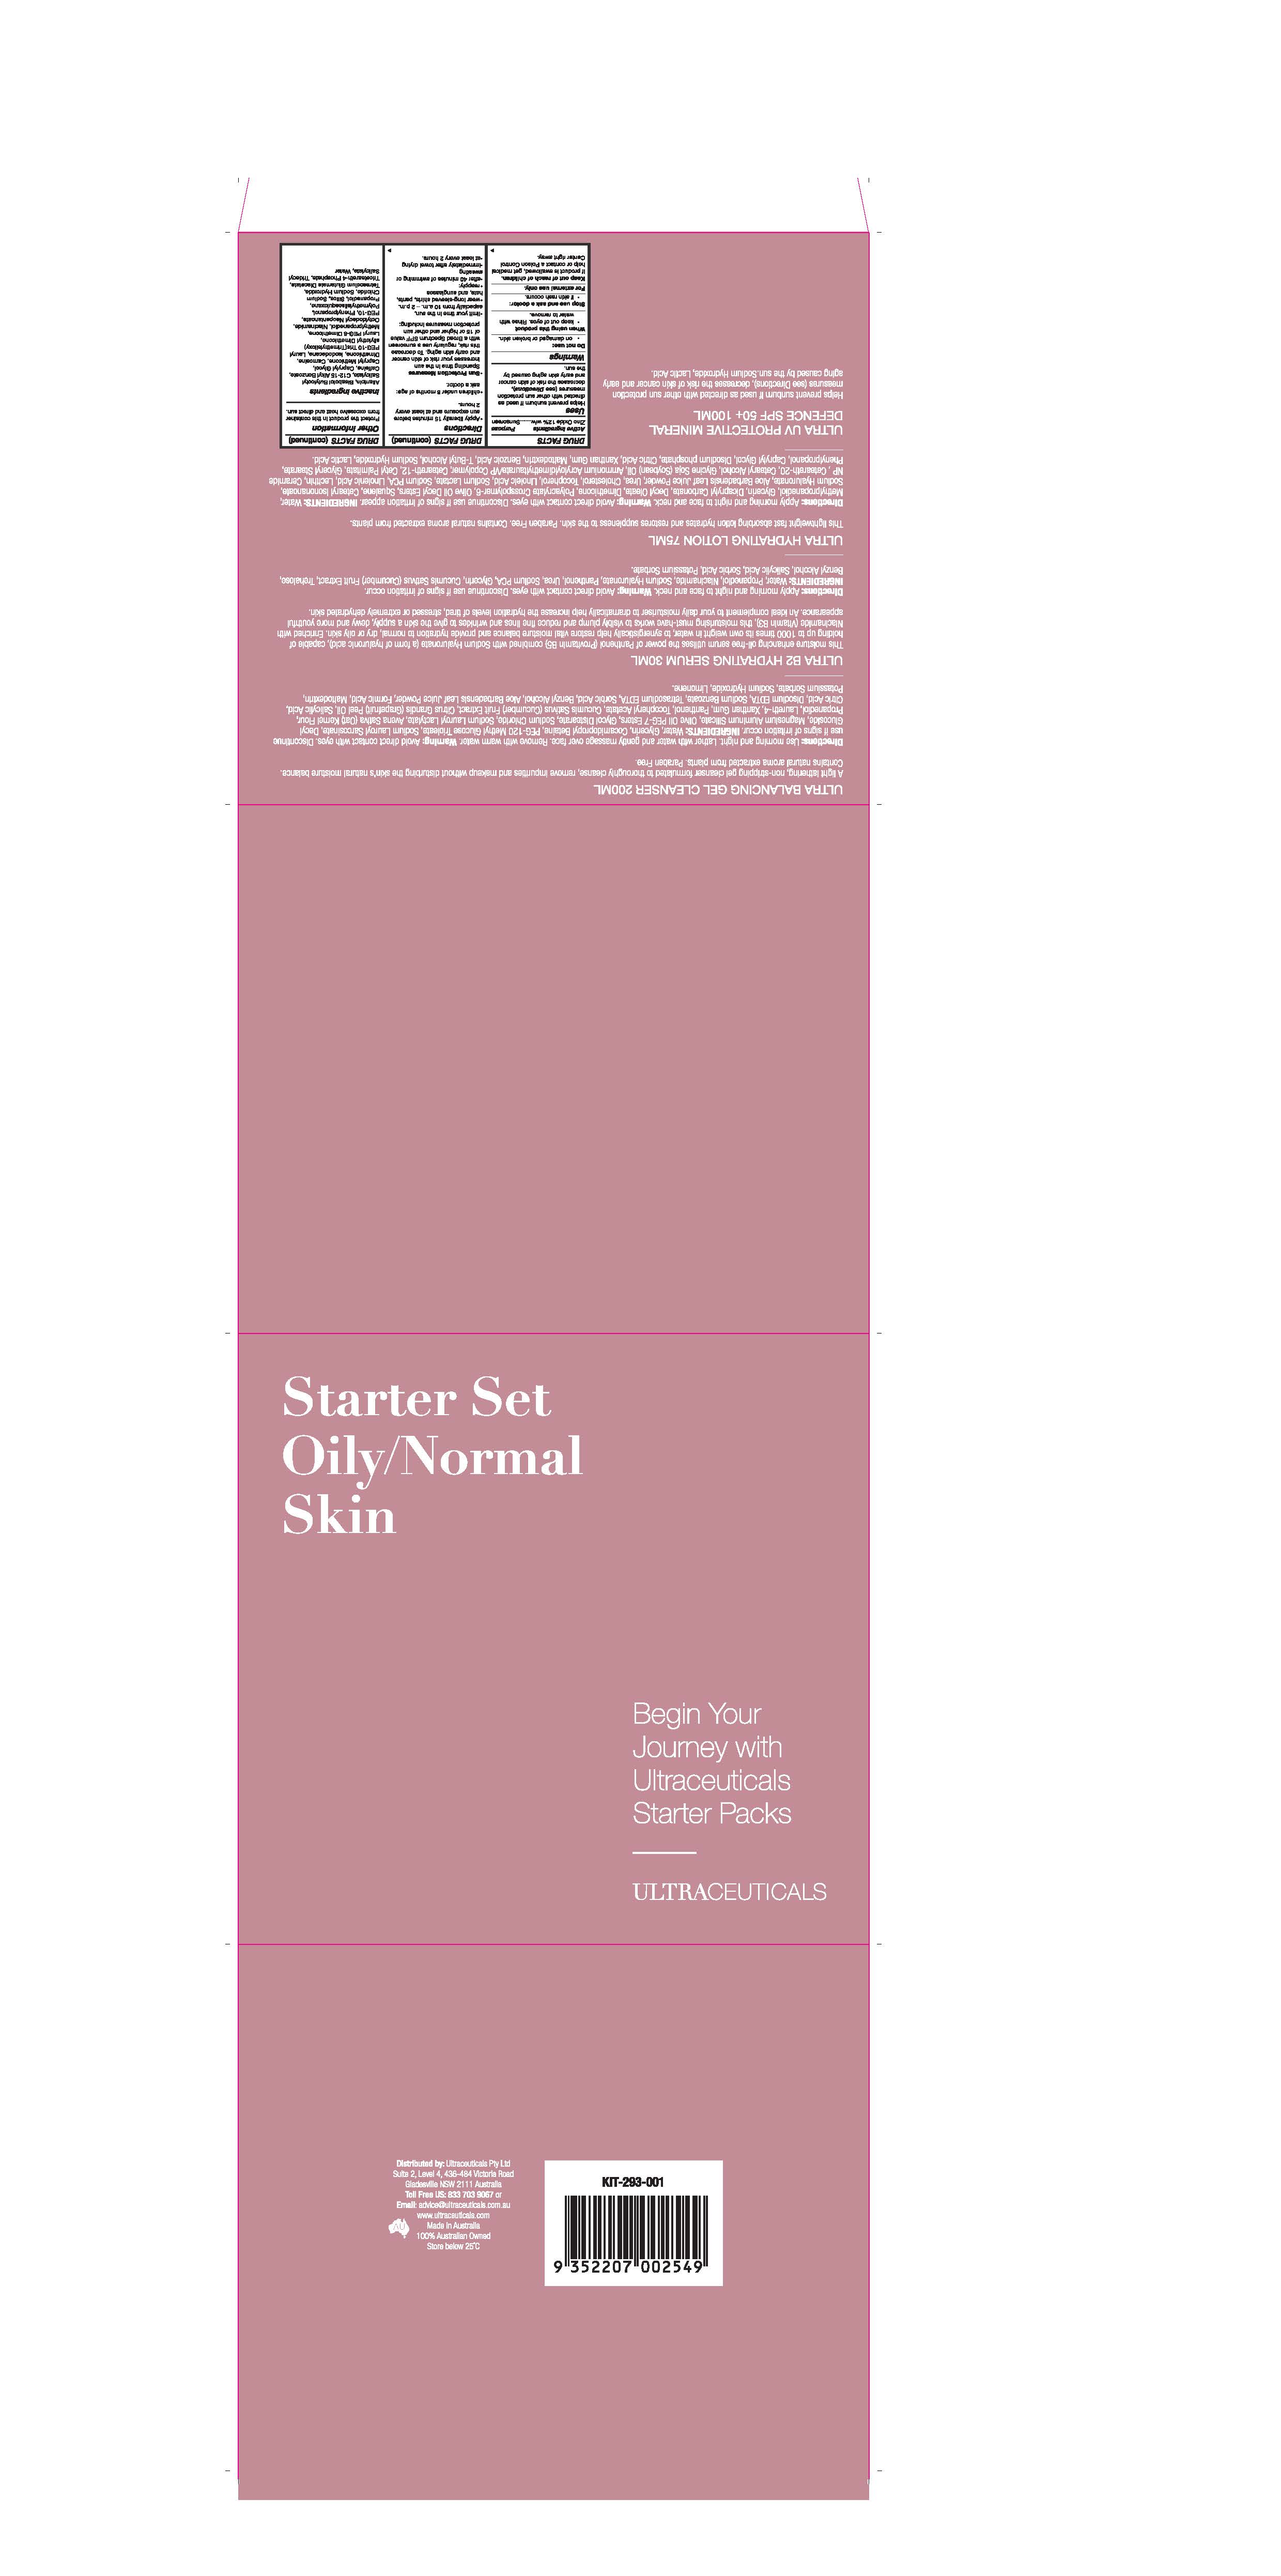 Oily Normal setr